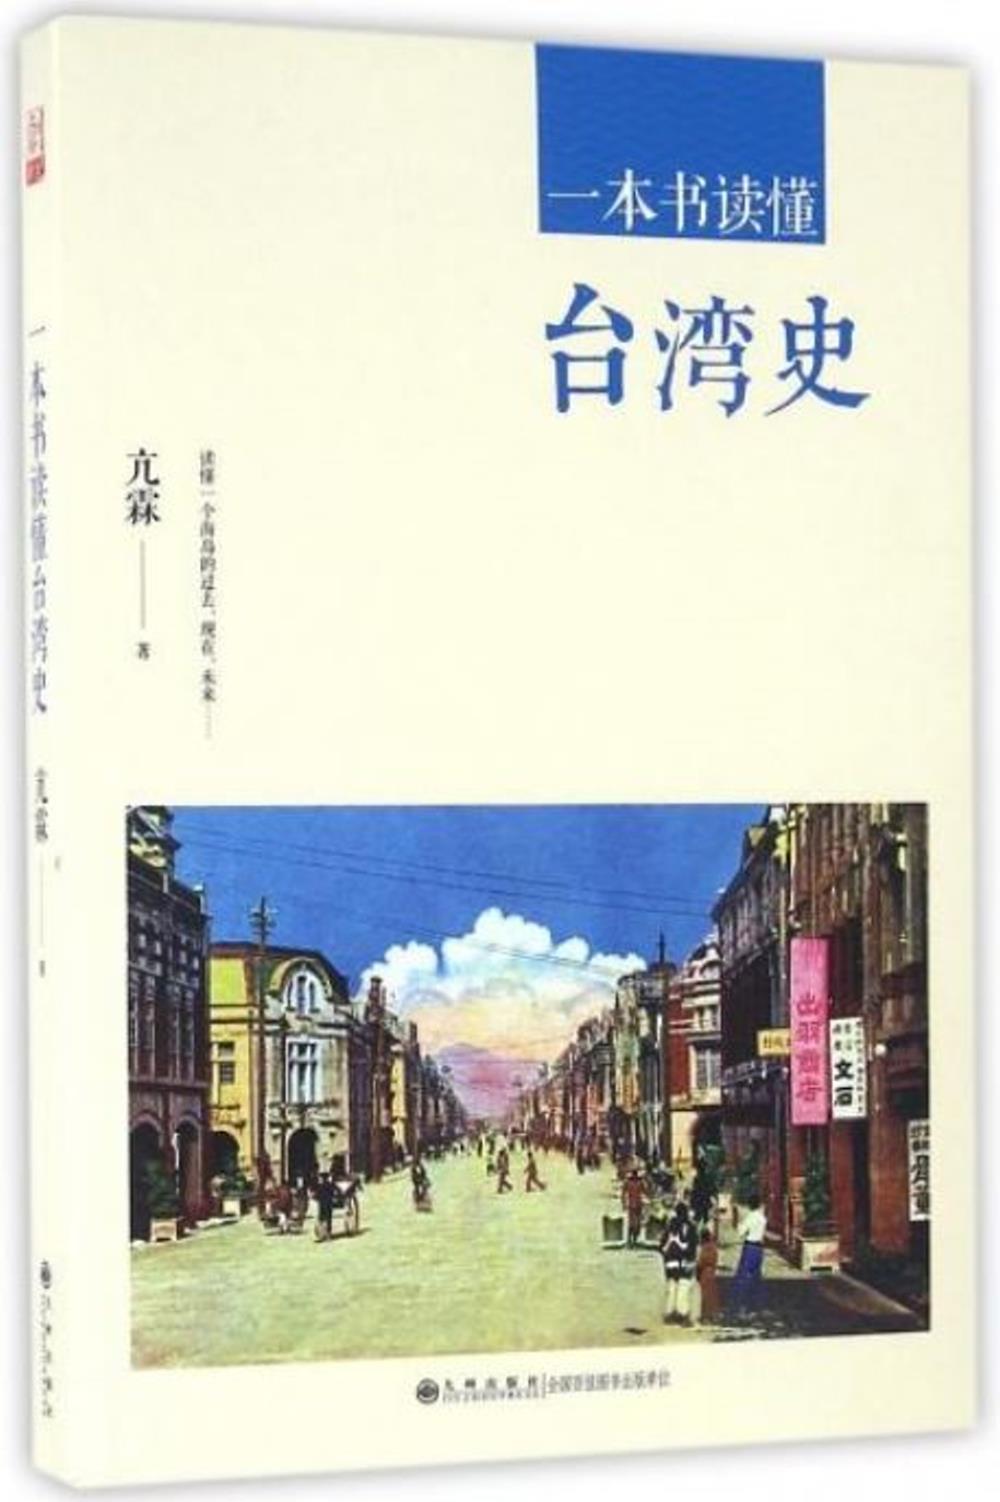 一本書讀懂台灣史